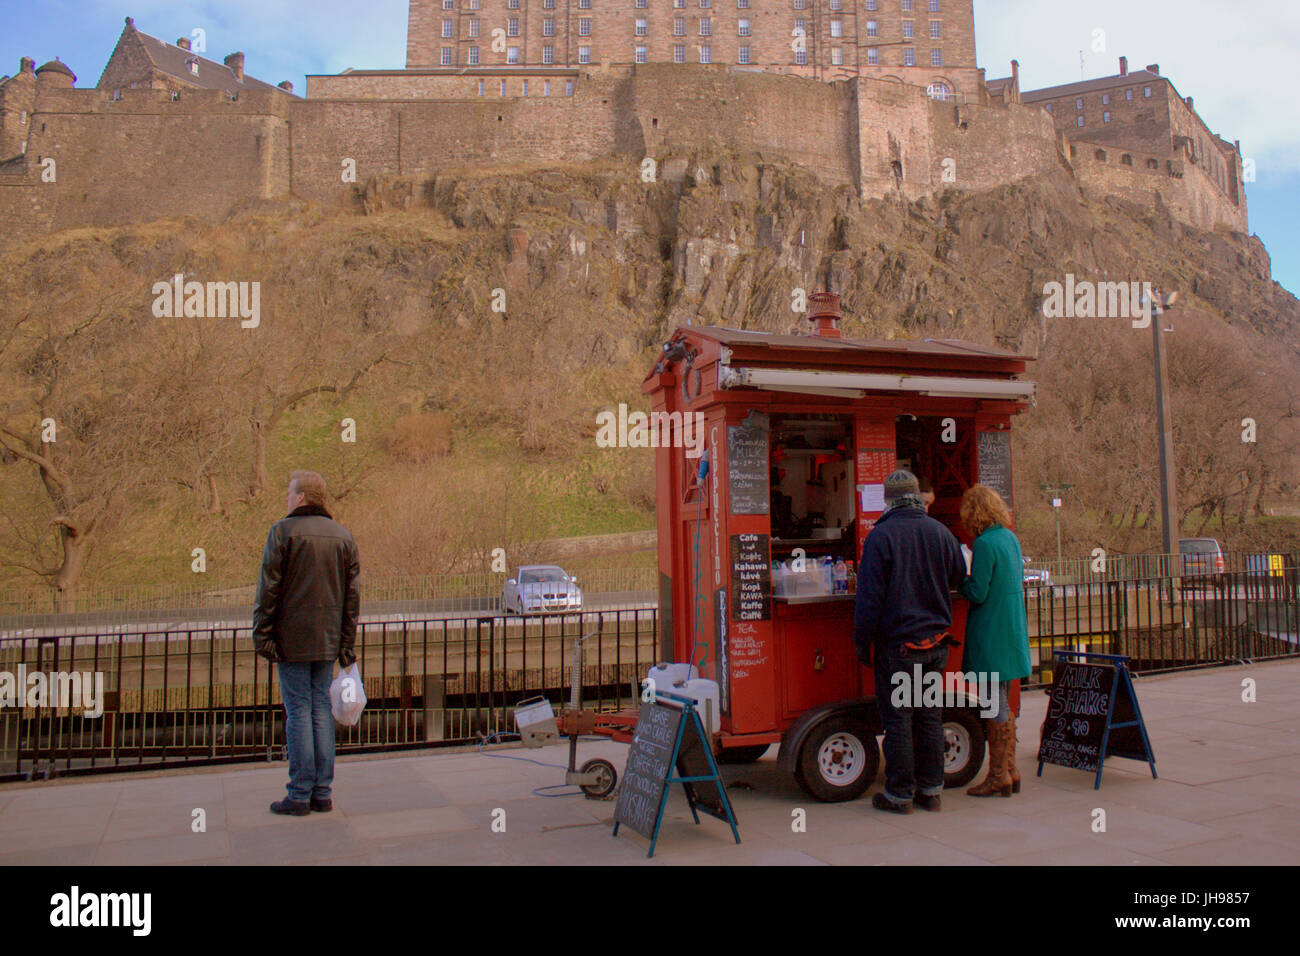 La police d'edimbourg fort téléphone Tardis convertie en nourriture et café kiosque à emporter le marché des fermiers près d'Édimbourg Édimbourg Castle Terrace Banque D'Images